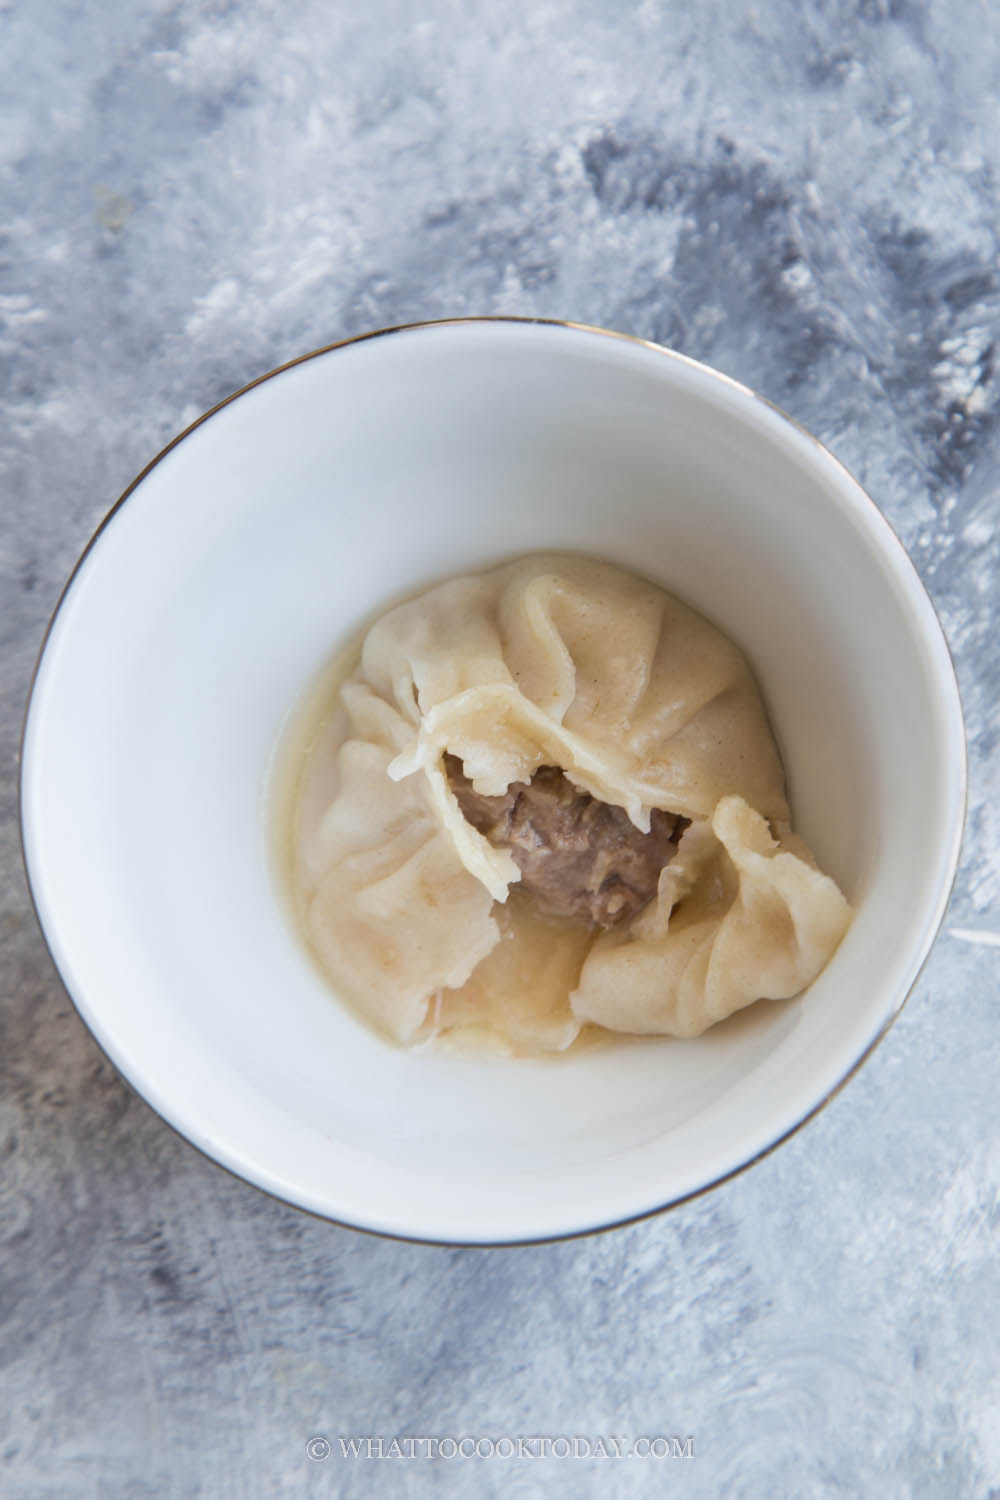 How To Make Xiao Long Bao / Soup Dumplings (The Easy Way)